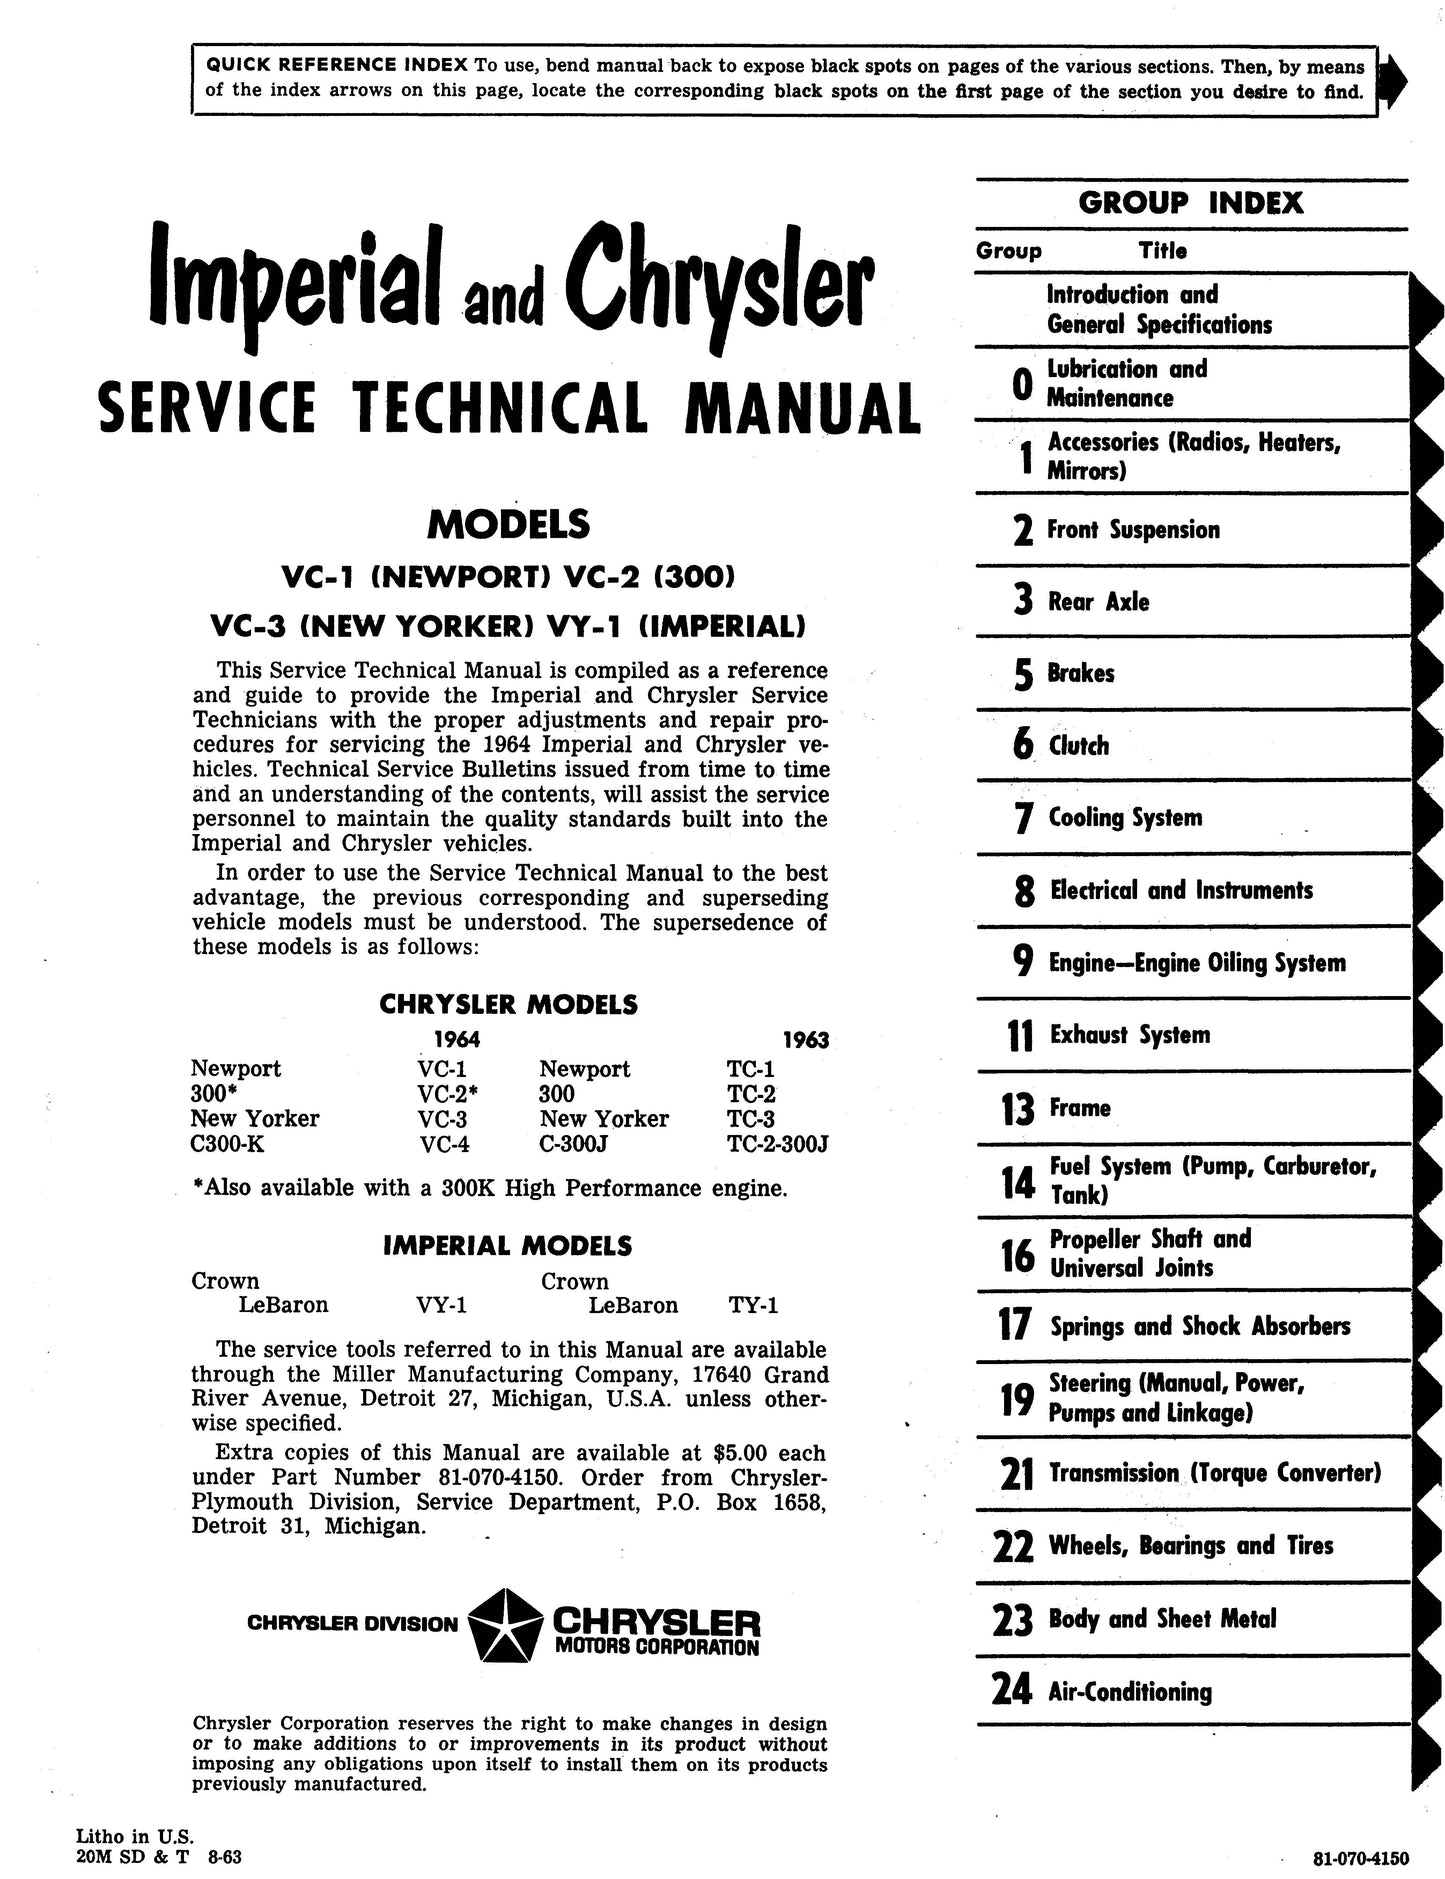 1964 Chrysler Shop Manual - All Models